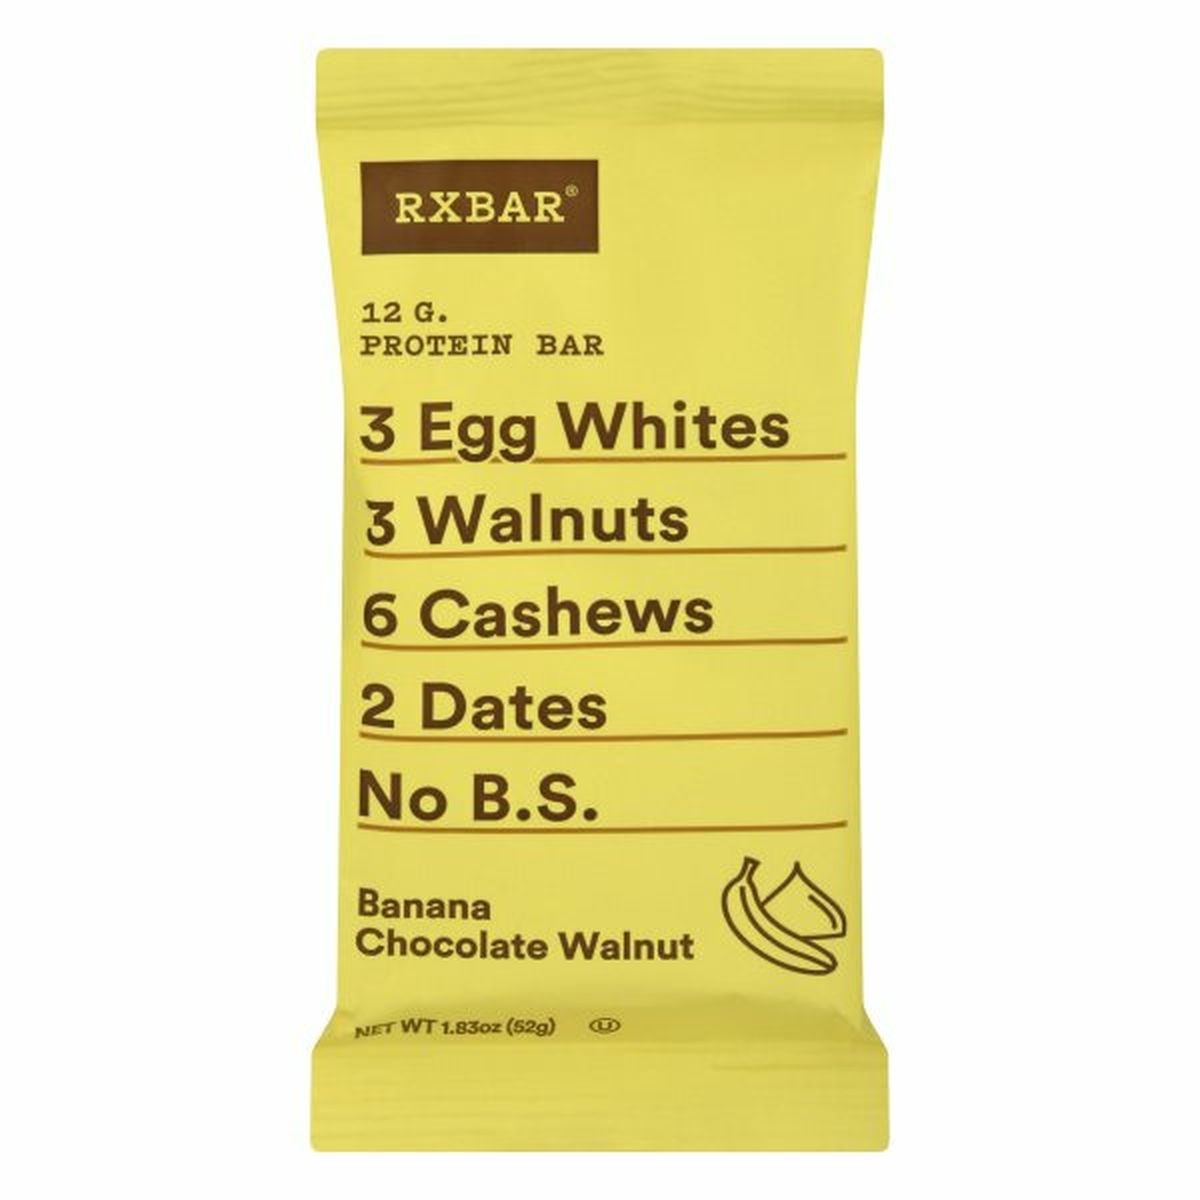 Calories in RXBAR Protein Bar, Banana Chocolate Walnut